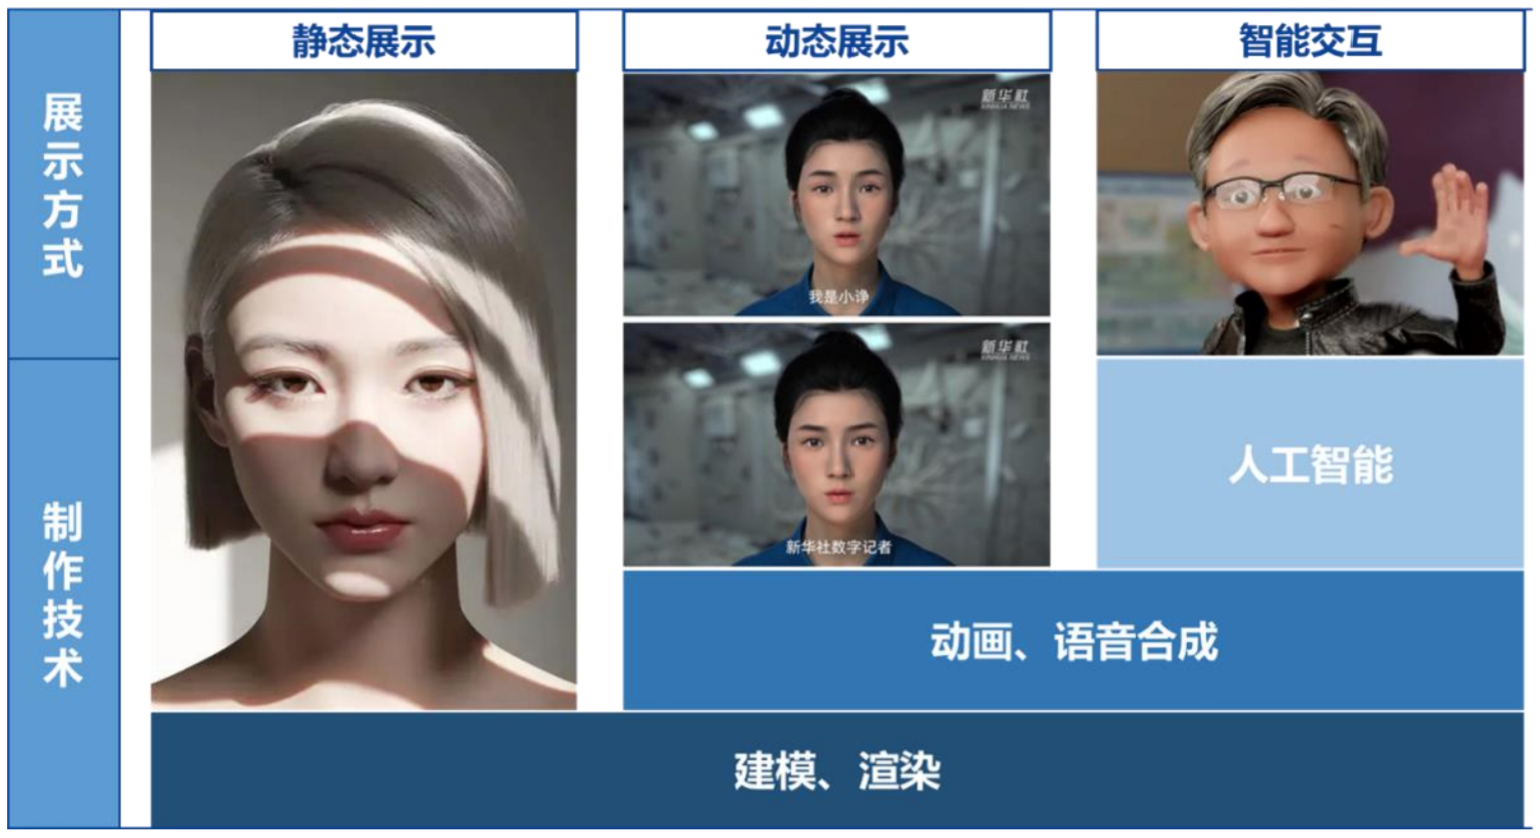 个性化虚拟形象崽崽，下载zepeto中文版，引爆社交圈